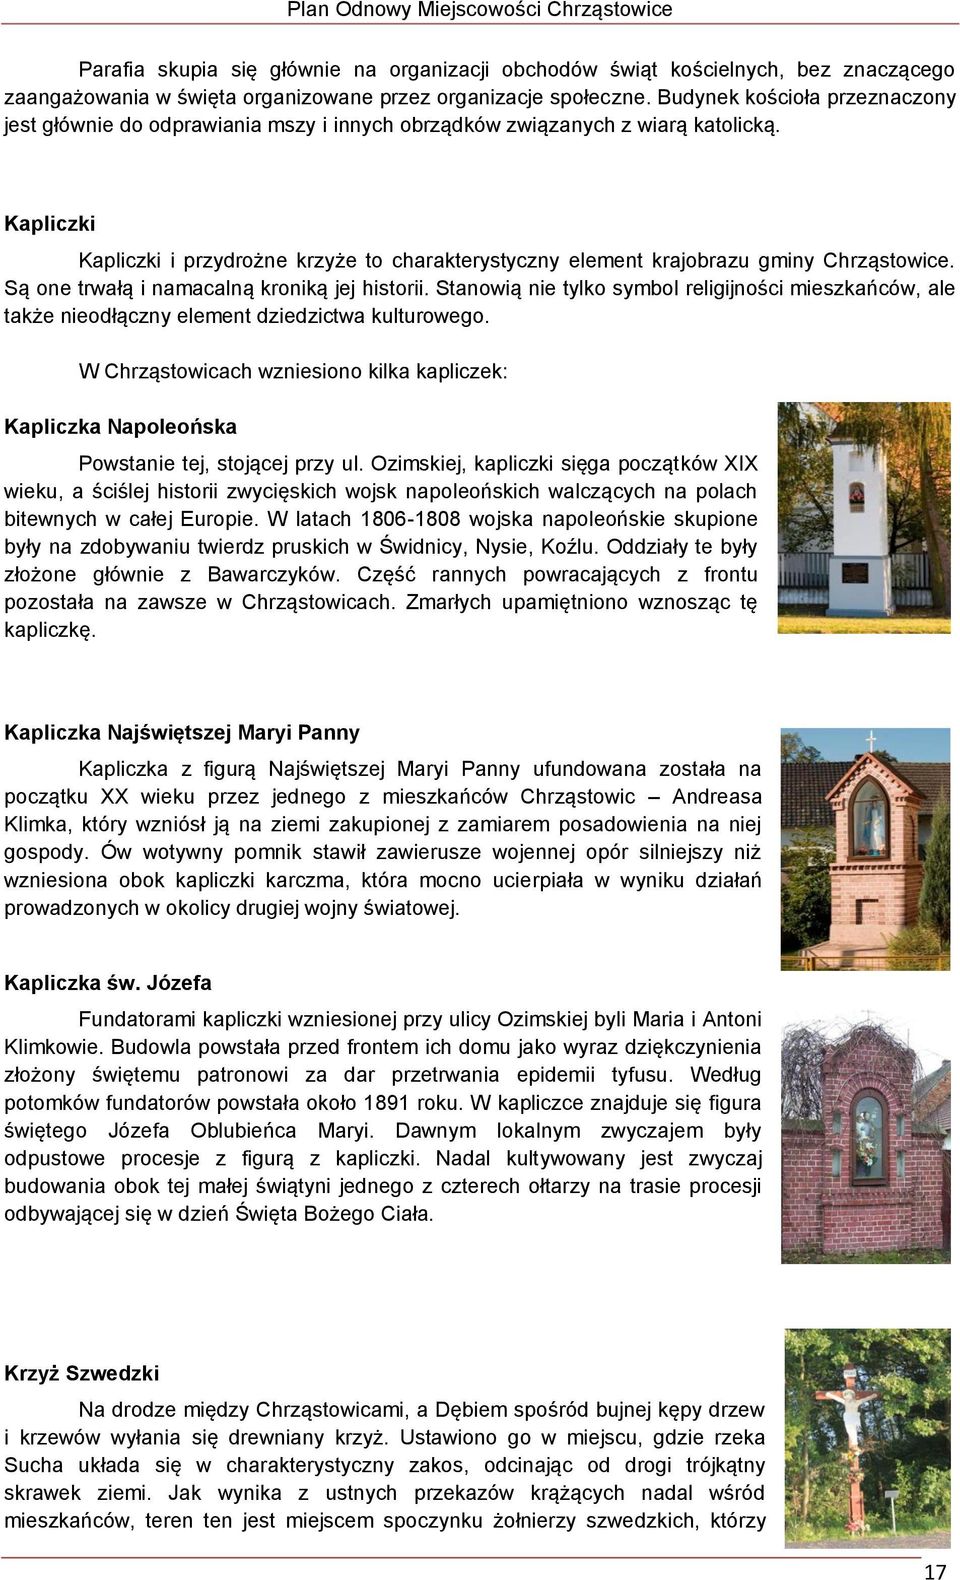 Kapliczki Kapliczki i przydrożne krzyże to charakterystyczny element krajobrazu gminy Chrząstowice. Są one trwałą i namacalną kroniką jej historii.